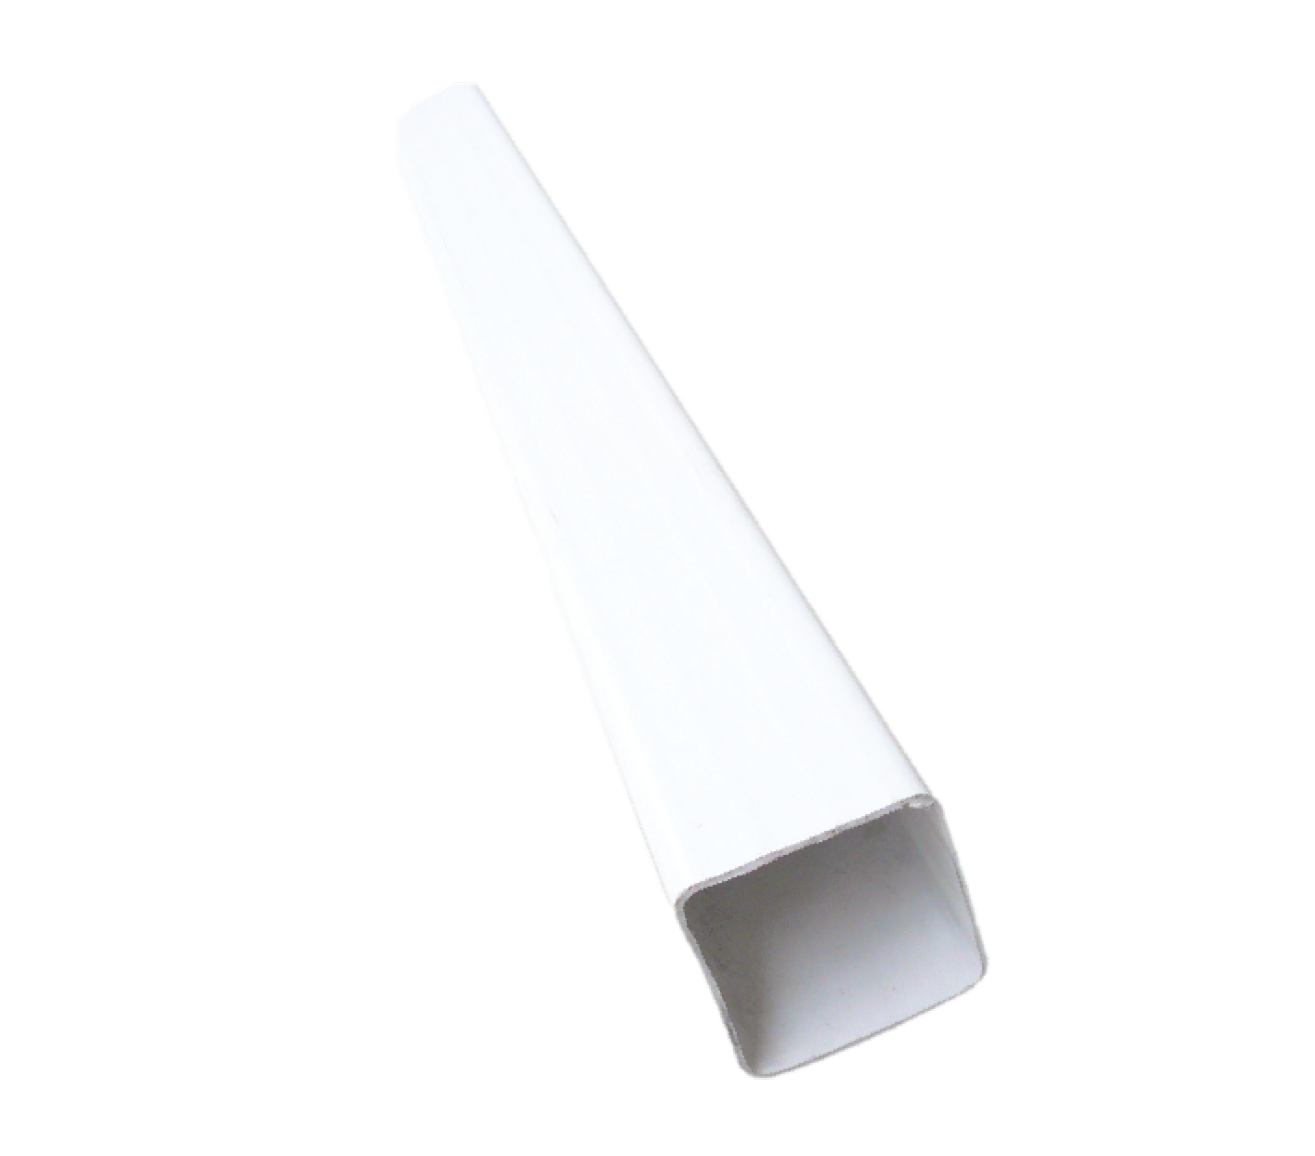 Canalón en PVC - Montaje del canalón con sus accesorios 